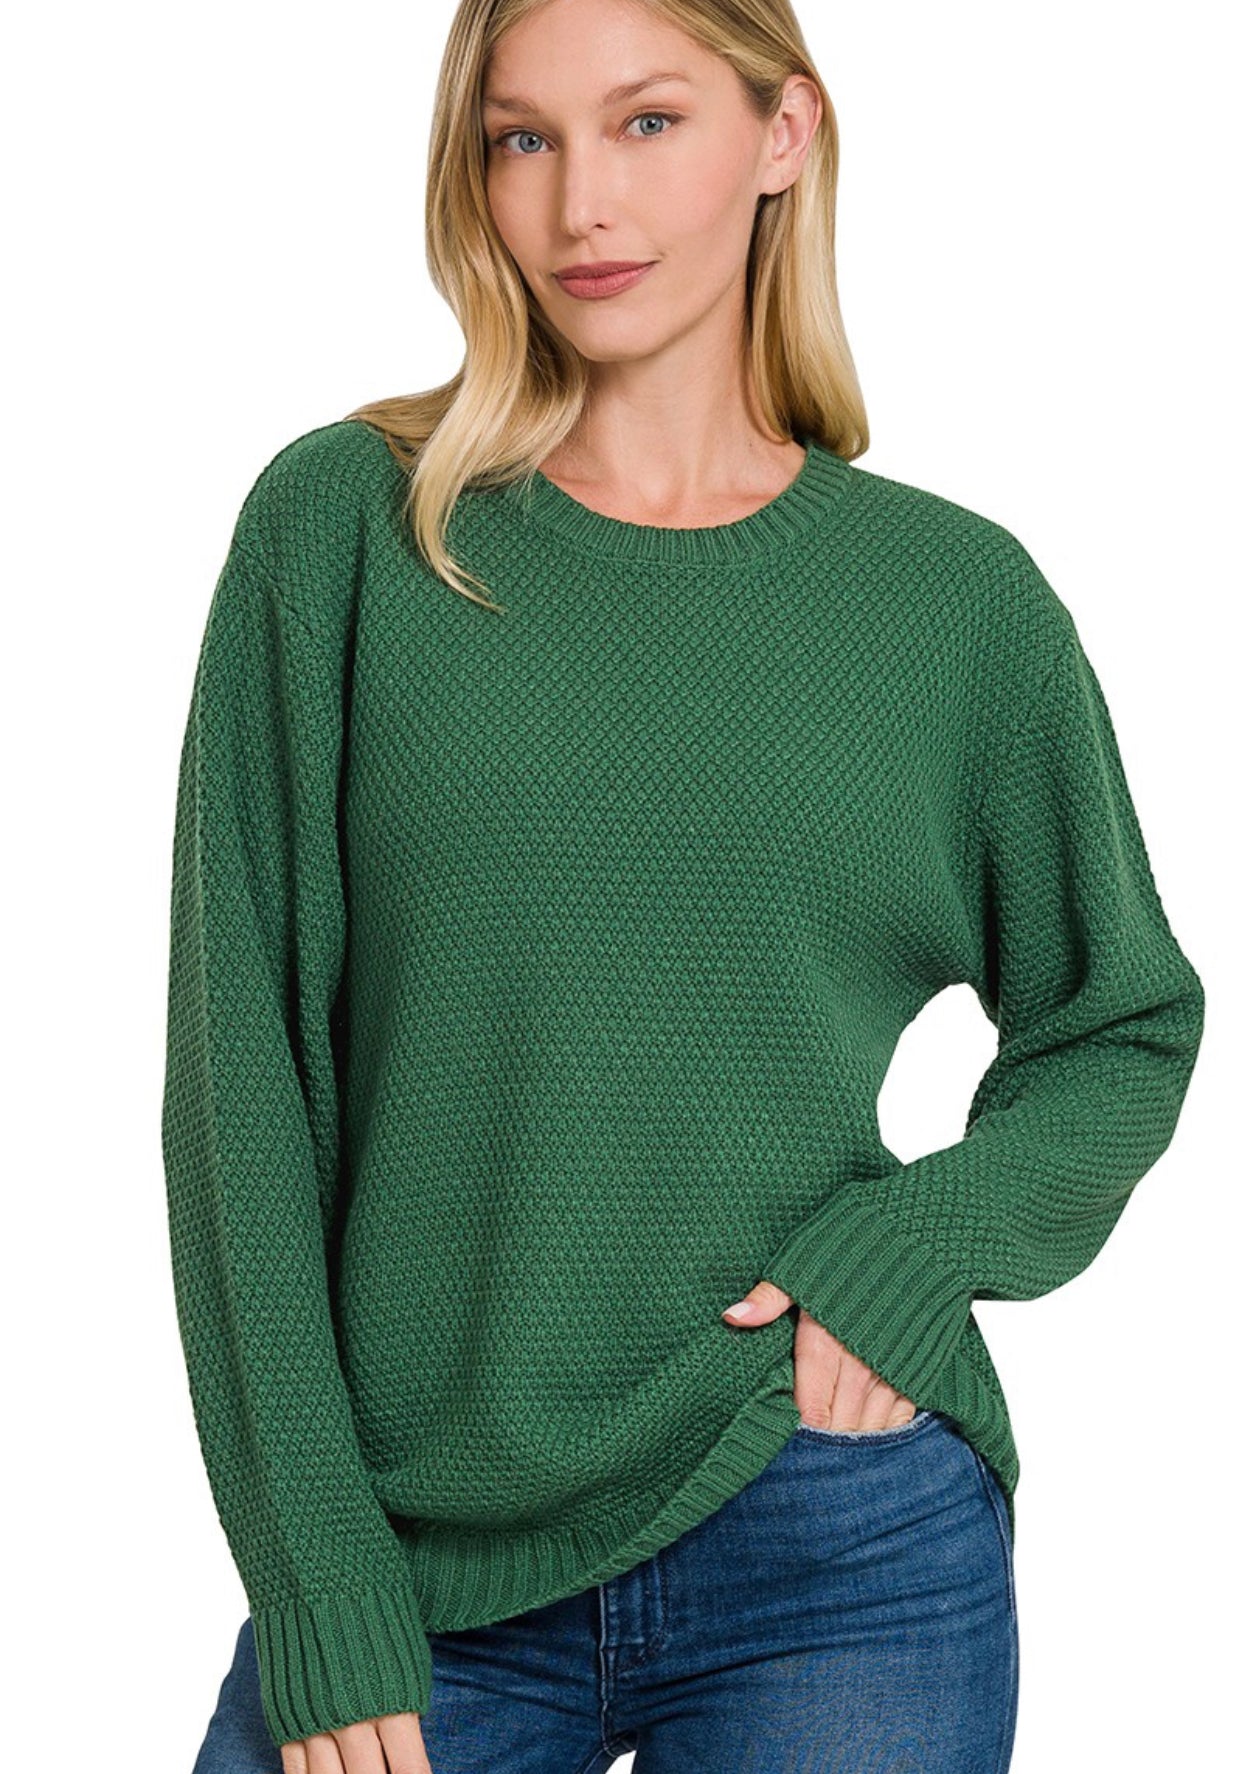 Malibu Knit Sweater Wintergreen